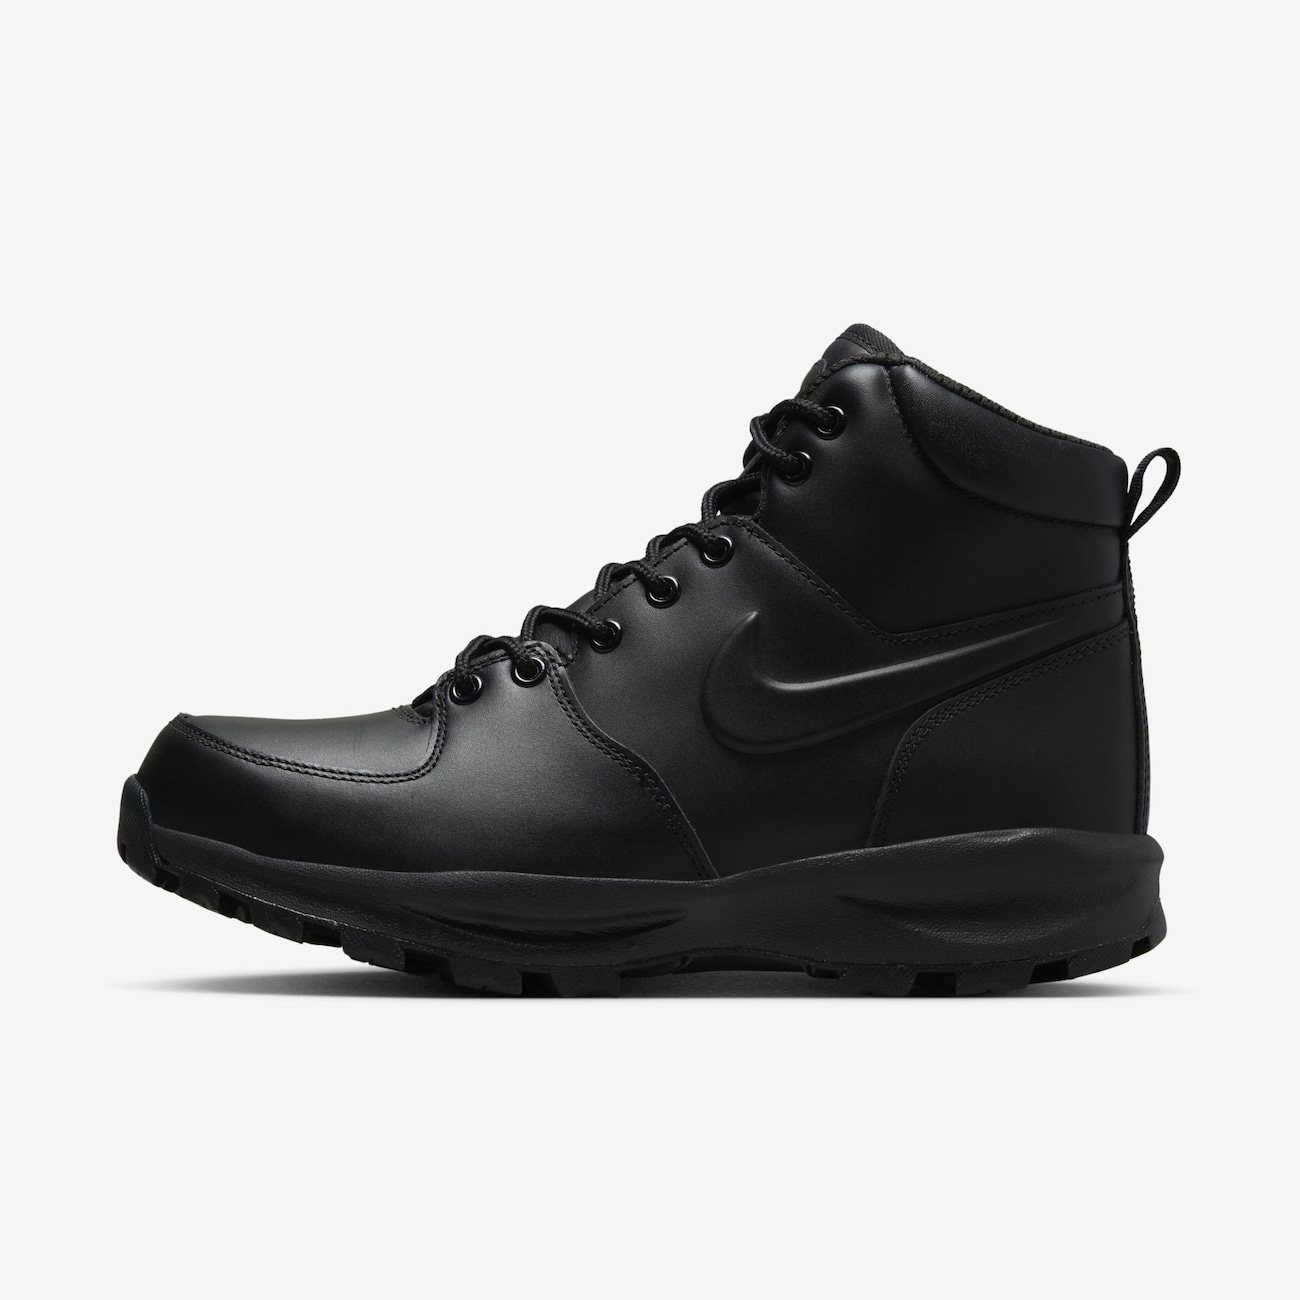 Nike Manoa Leather-støvler til mænd - sort